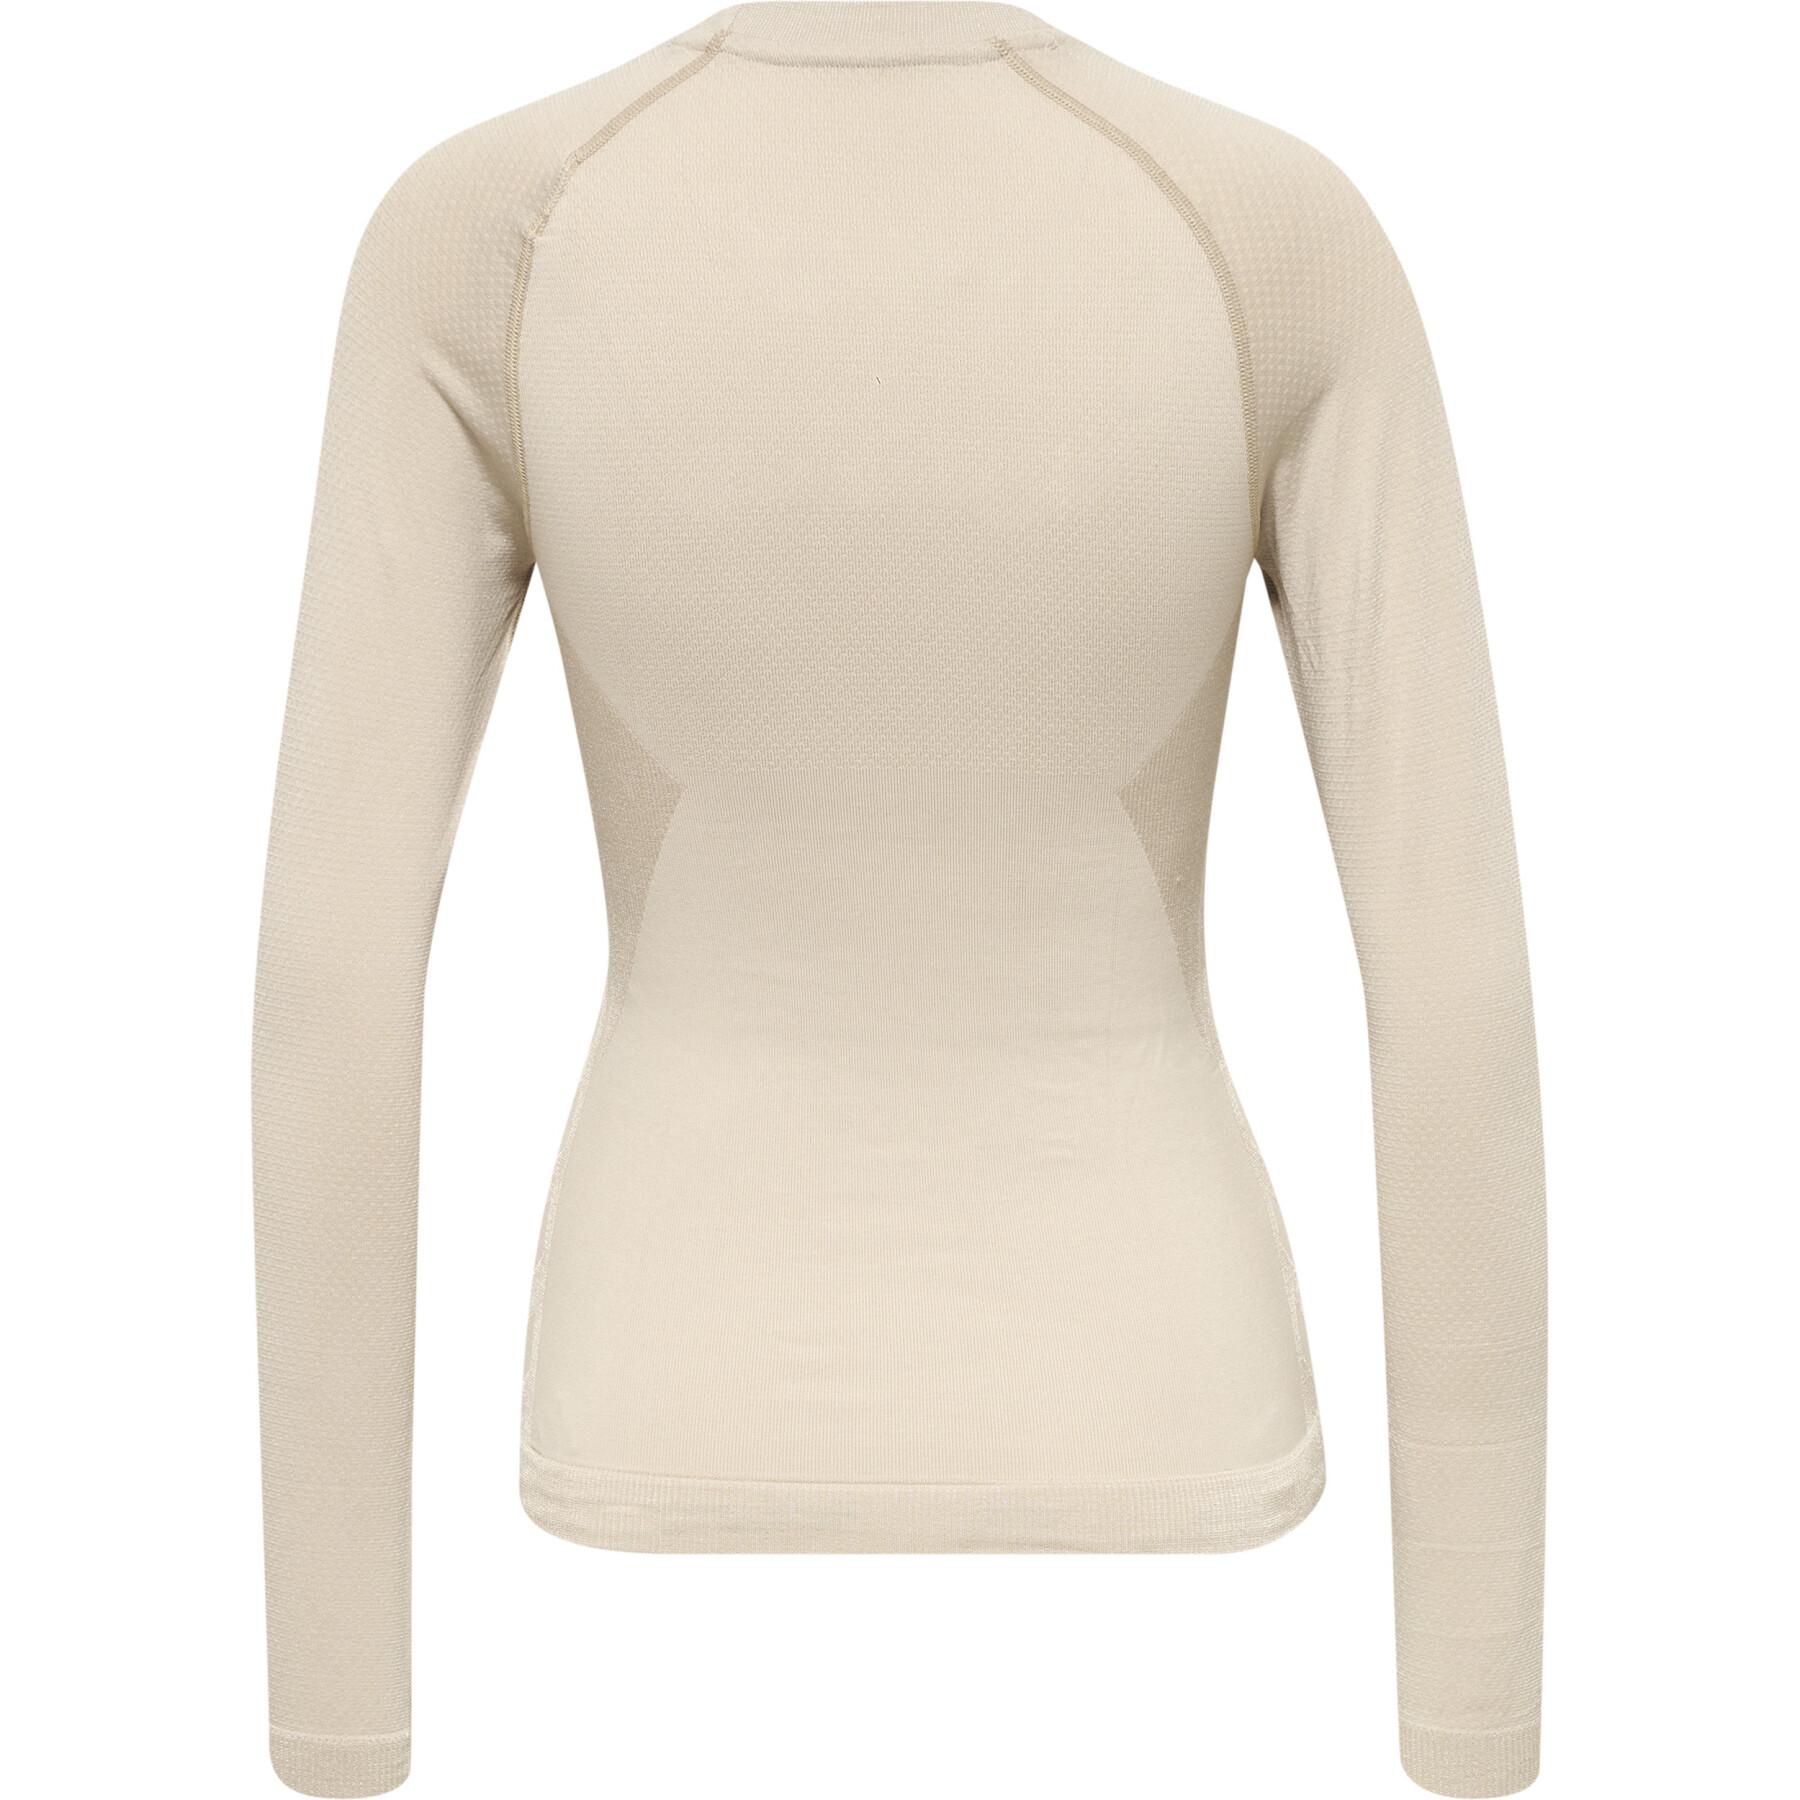 Women's long-sleeved T-shirt Hummel Clea